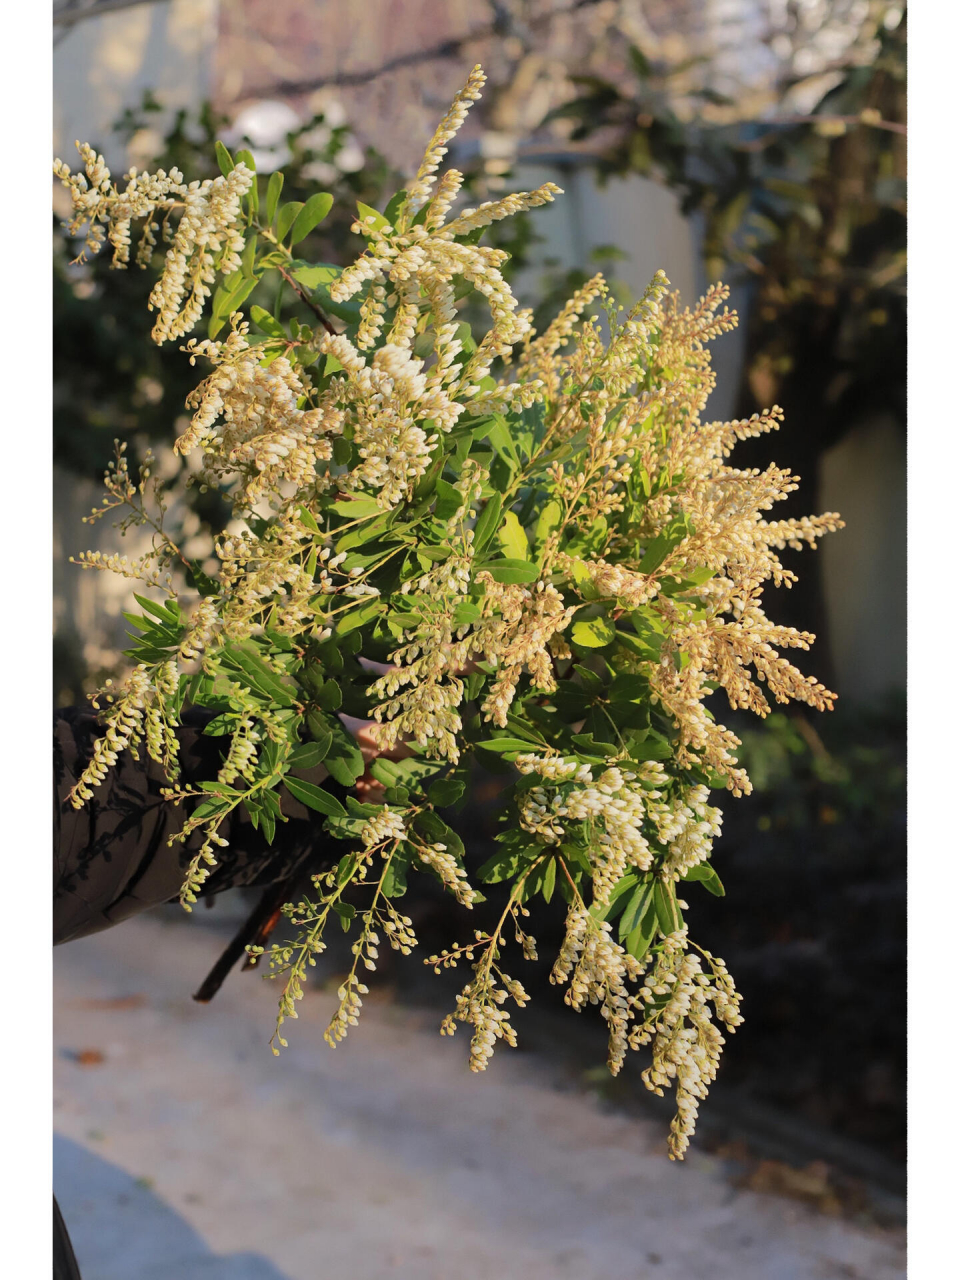 马醉木山里白 一串串铃铛型的小白花,散发着淡淡的香味 小巧的花朵